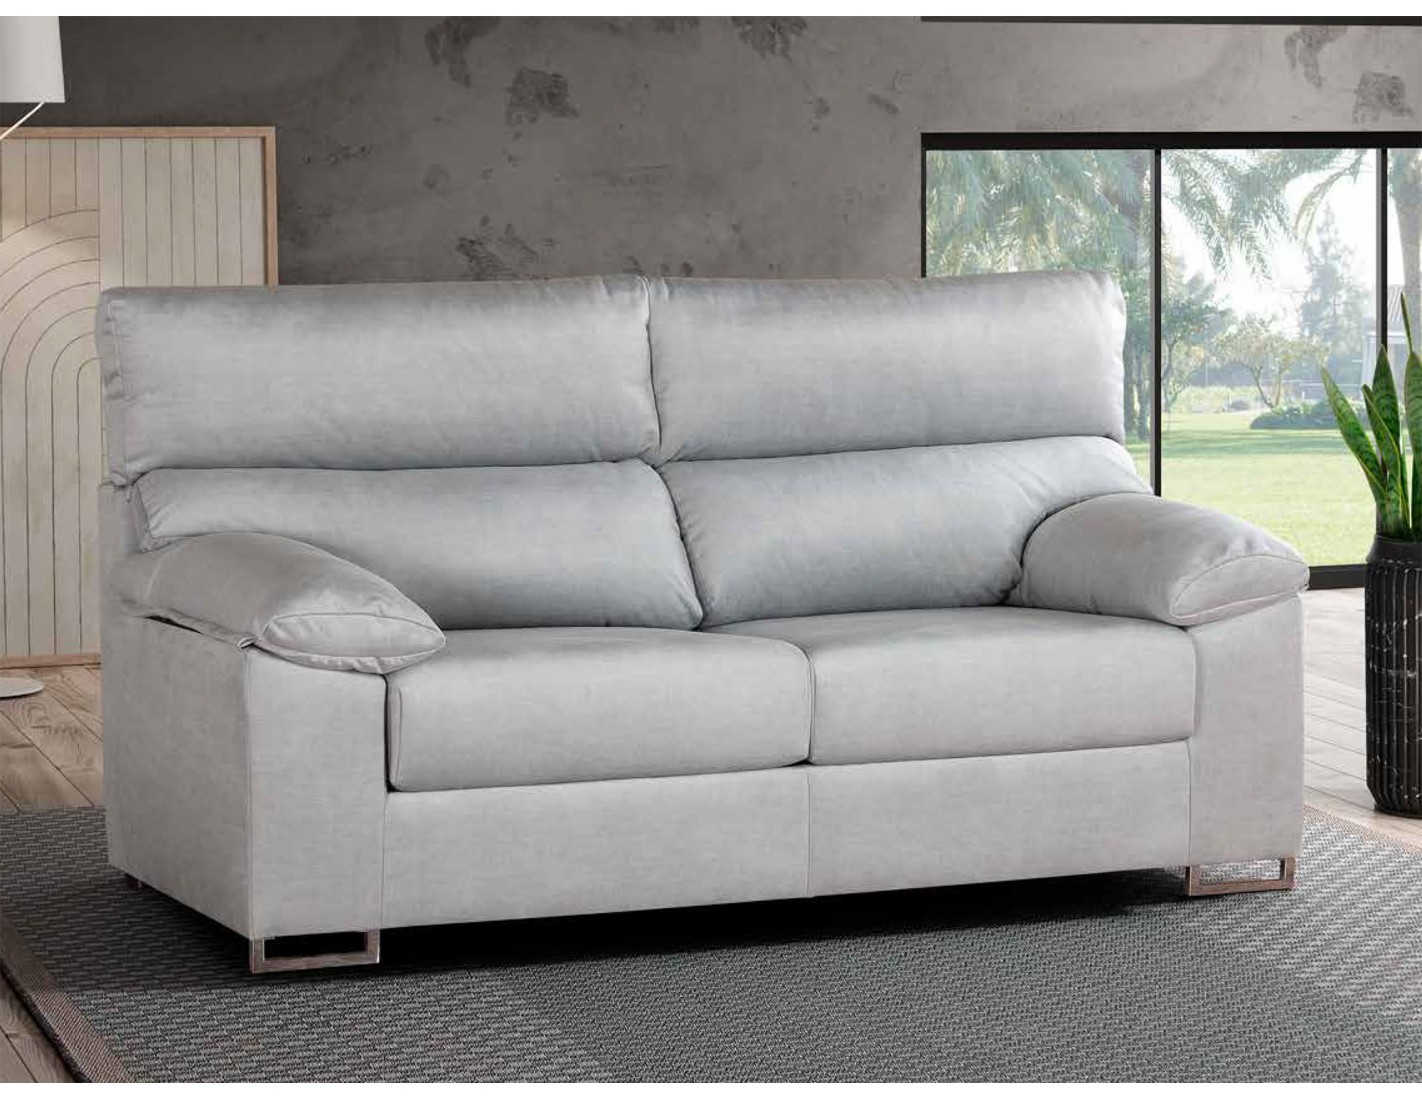 Conjunto: sofá 3 plazas y sofá 2 plazas económico - Nimes - Don Baraton:  tienda de sofás, colchones y muebles